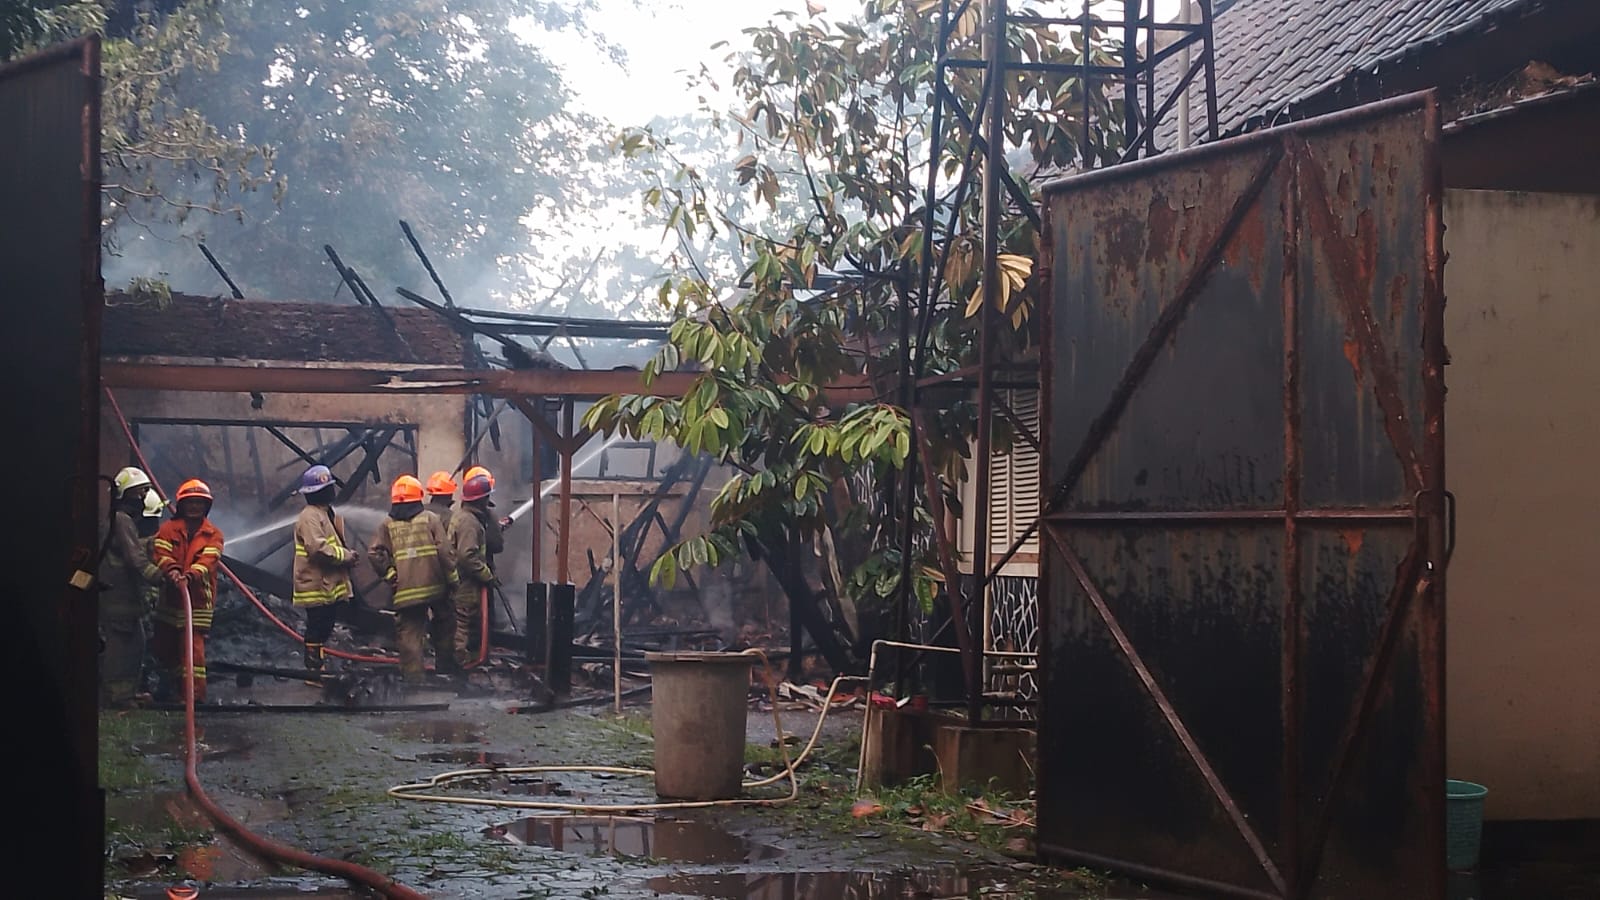 Petugas Diskar PB Kota Bandung tengah sibuk padamkan api yang menghanguskan bangunan rumah milik Dinas Perum Perhutani di Jalan Tasikmalaya, Kota Bandung. (YANUAR/JABAR EKSPRES)